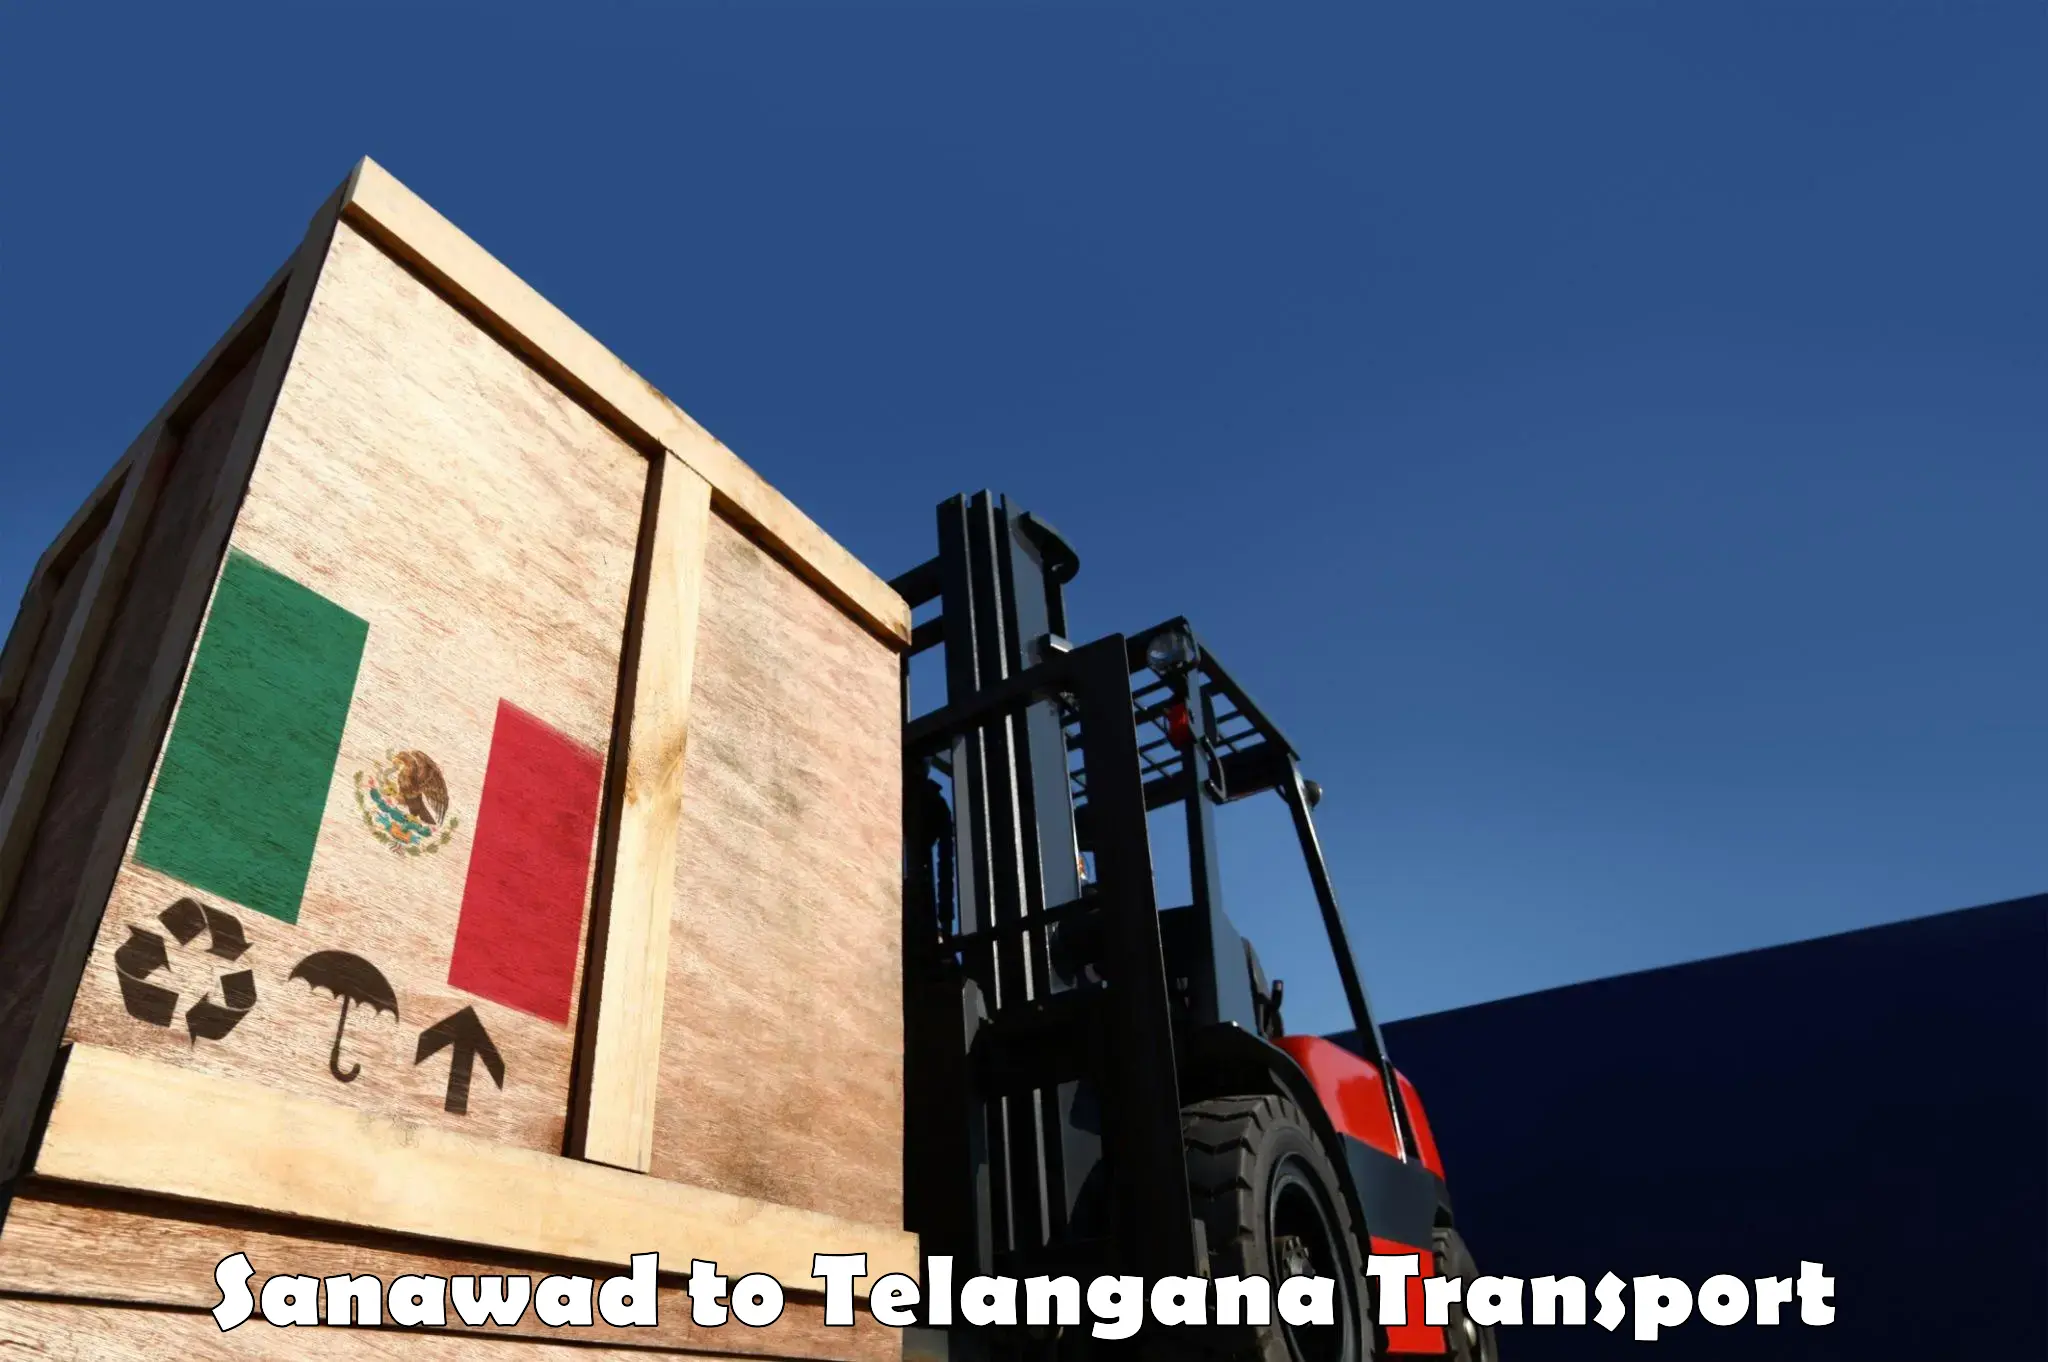 International cargo transportation services in Sanawad to Jannaram